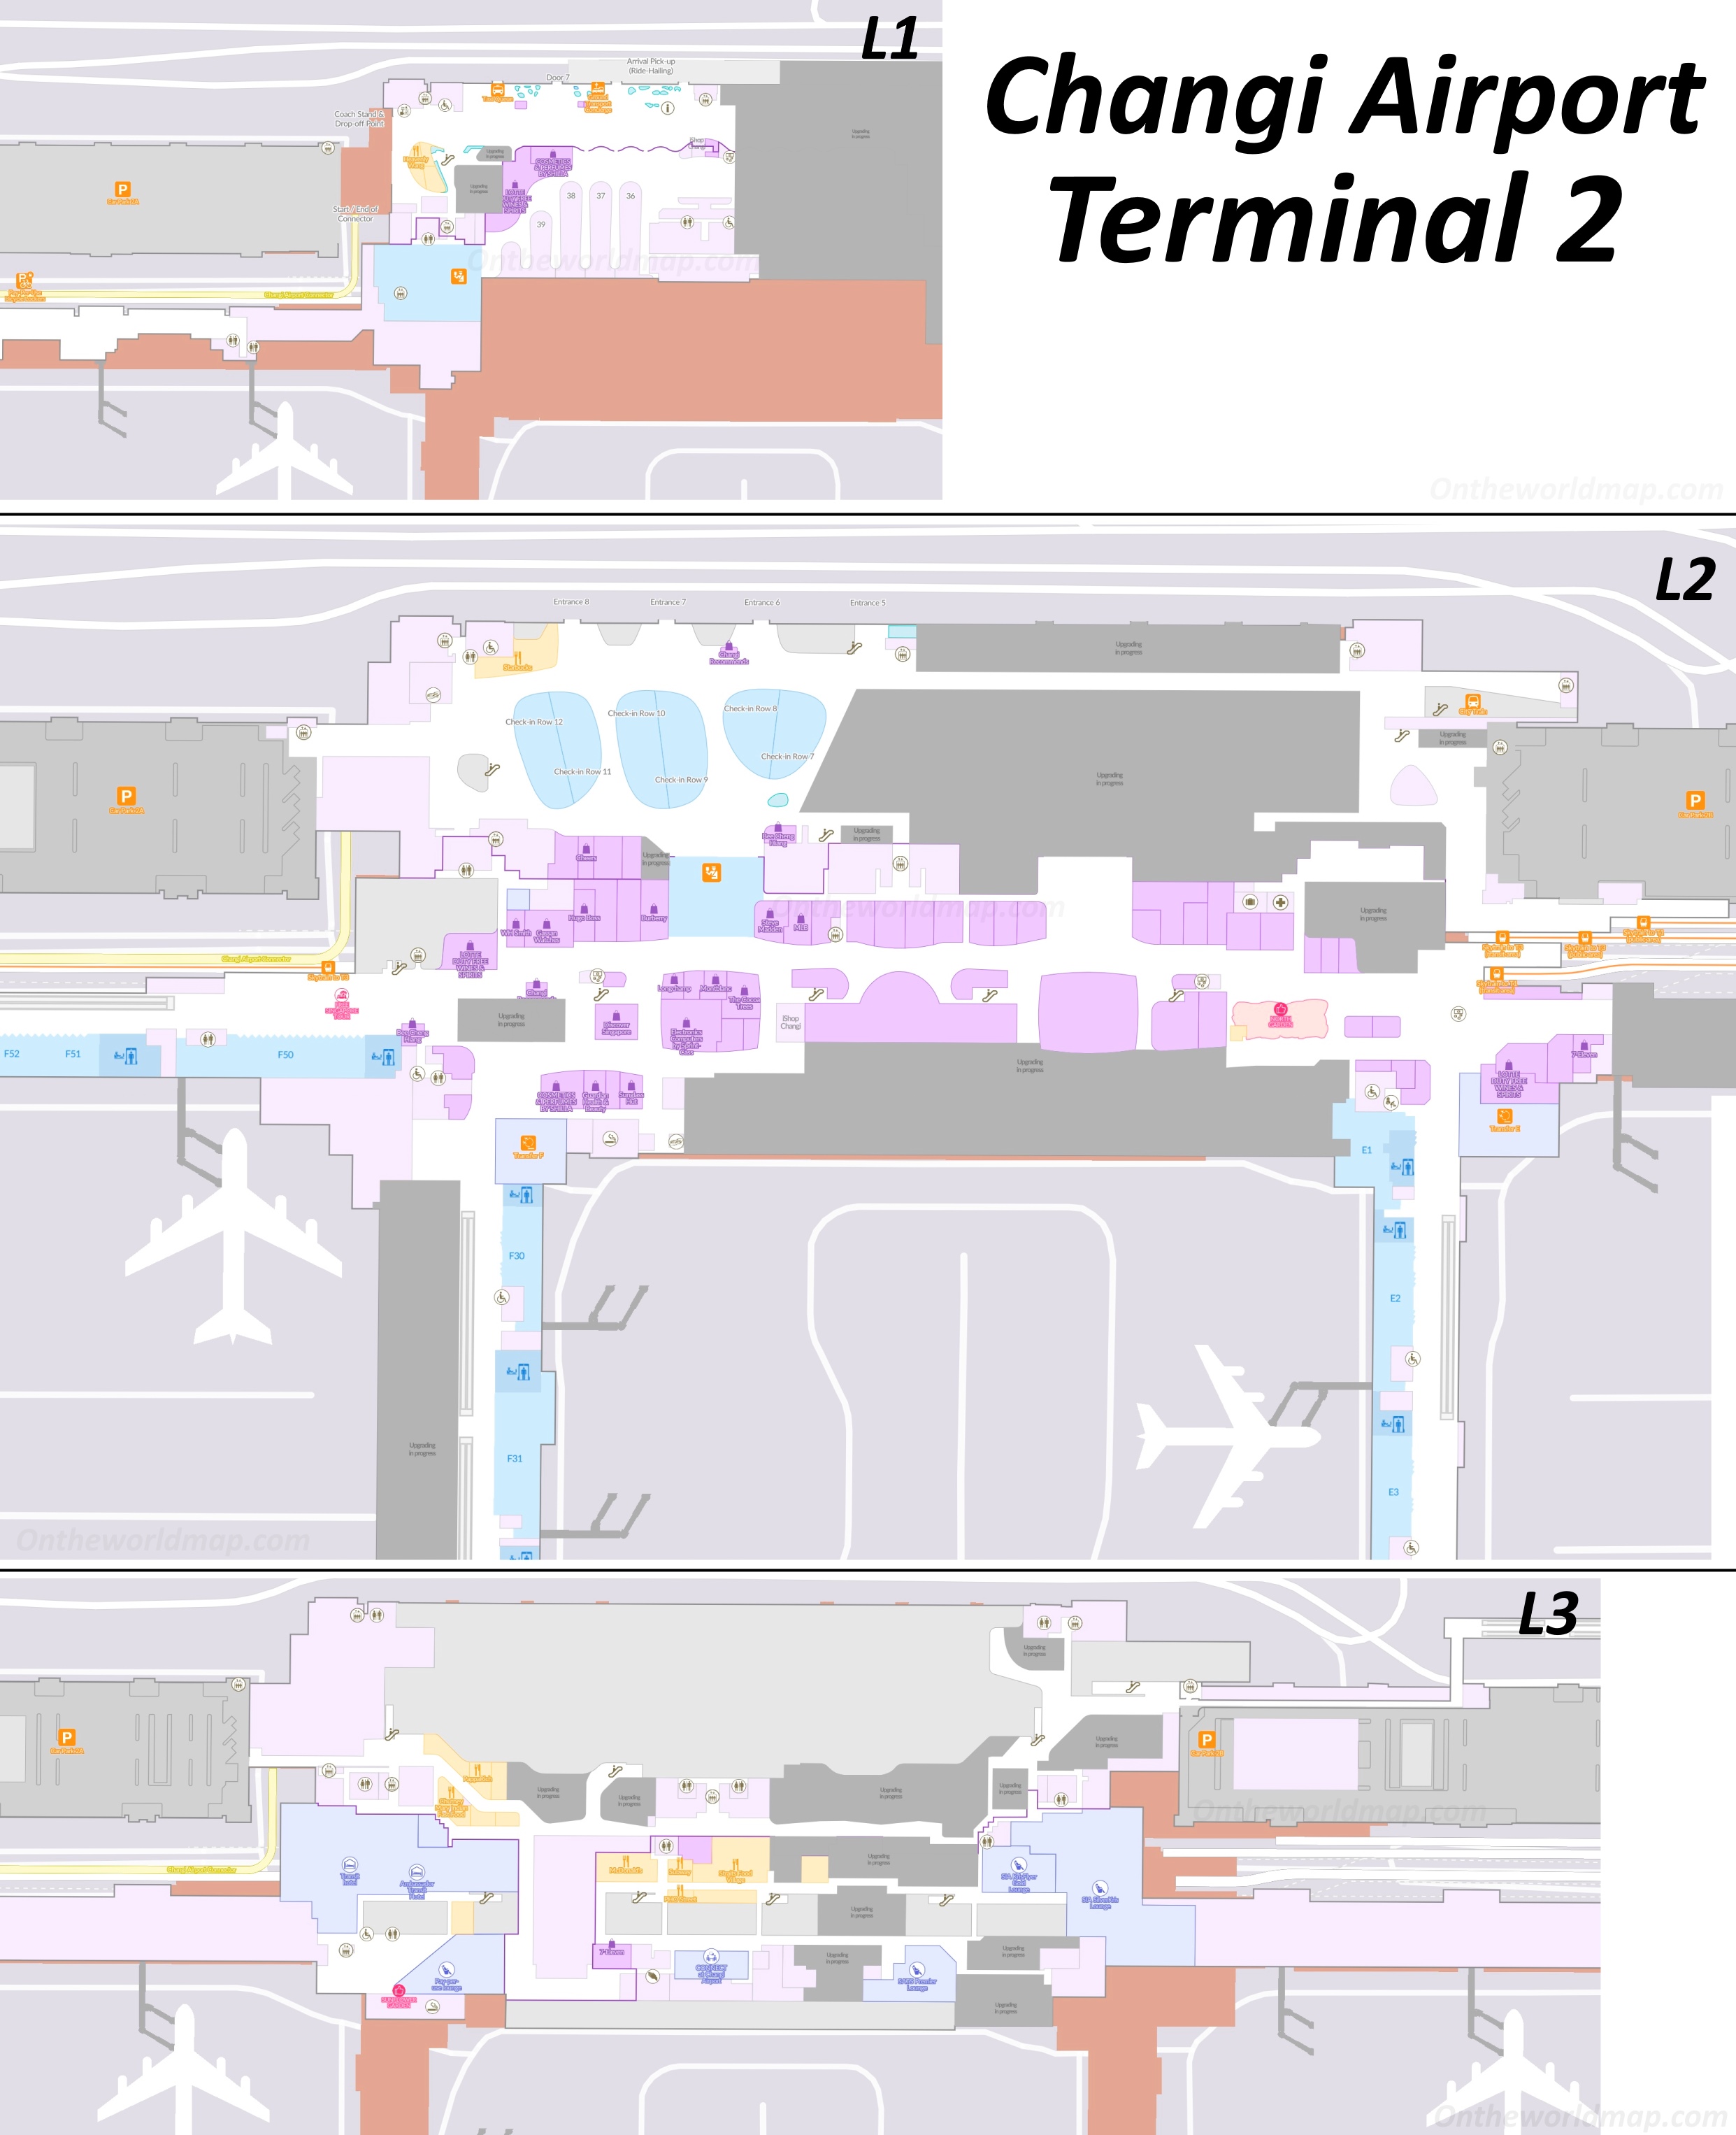 Changi Airport Terminal 2 Map | Singapore - Ontheworldmap.com